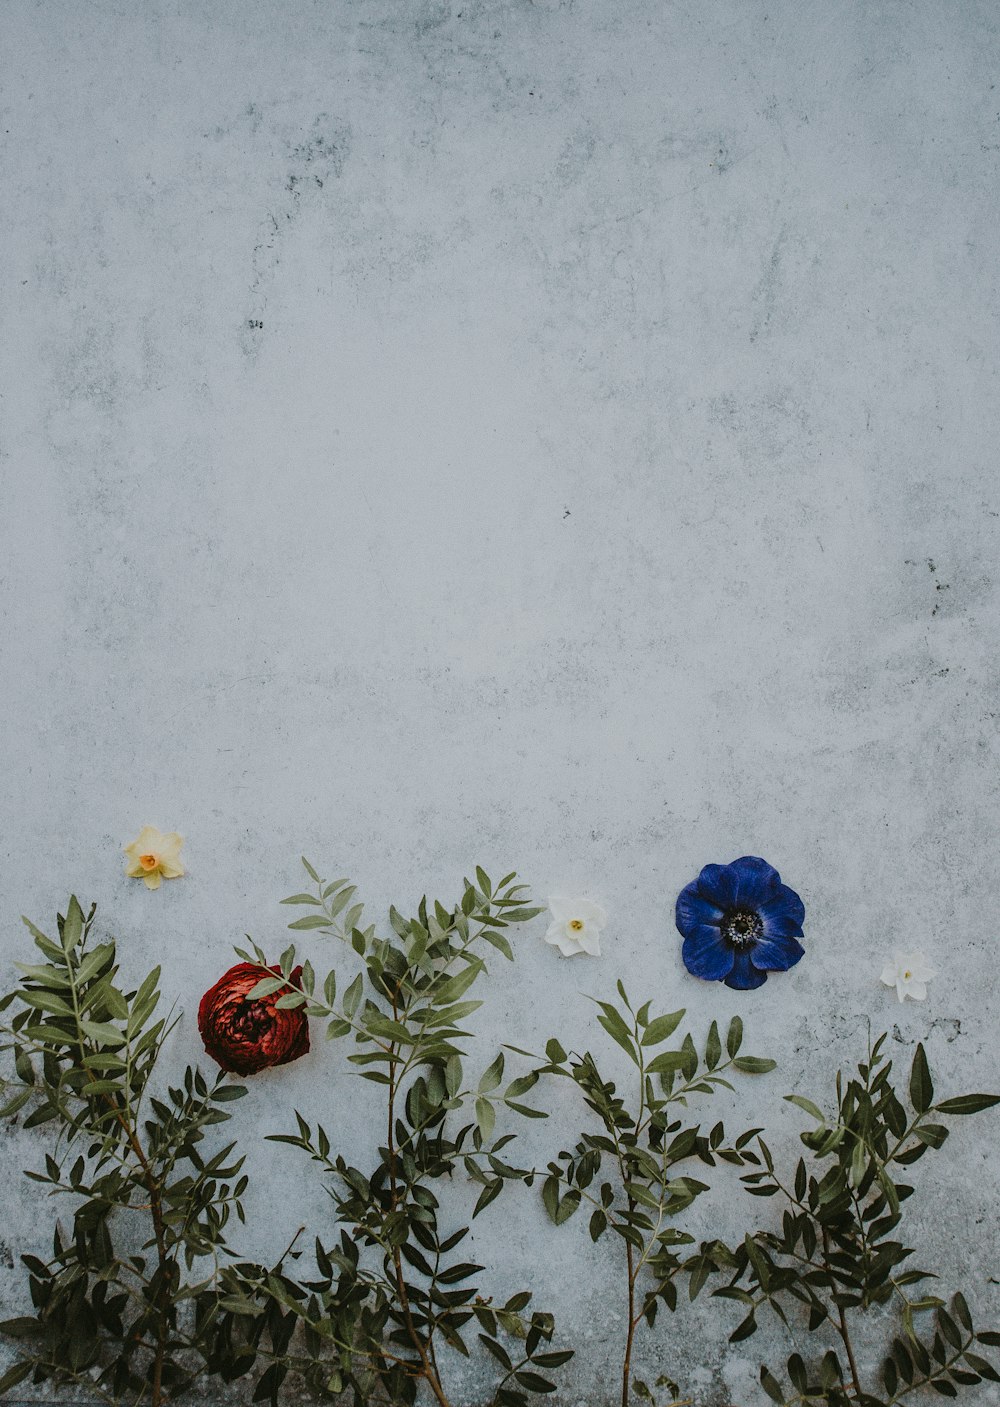 파란색, 흰색, 빨간색 꽃잎이 있는 꽃의 근접 촬영 사진